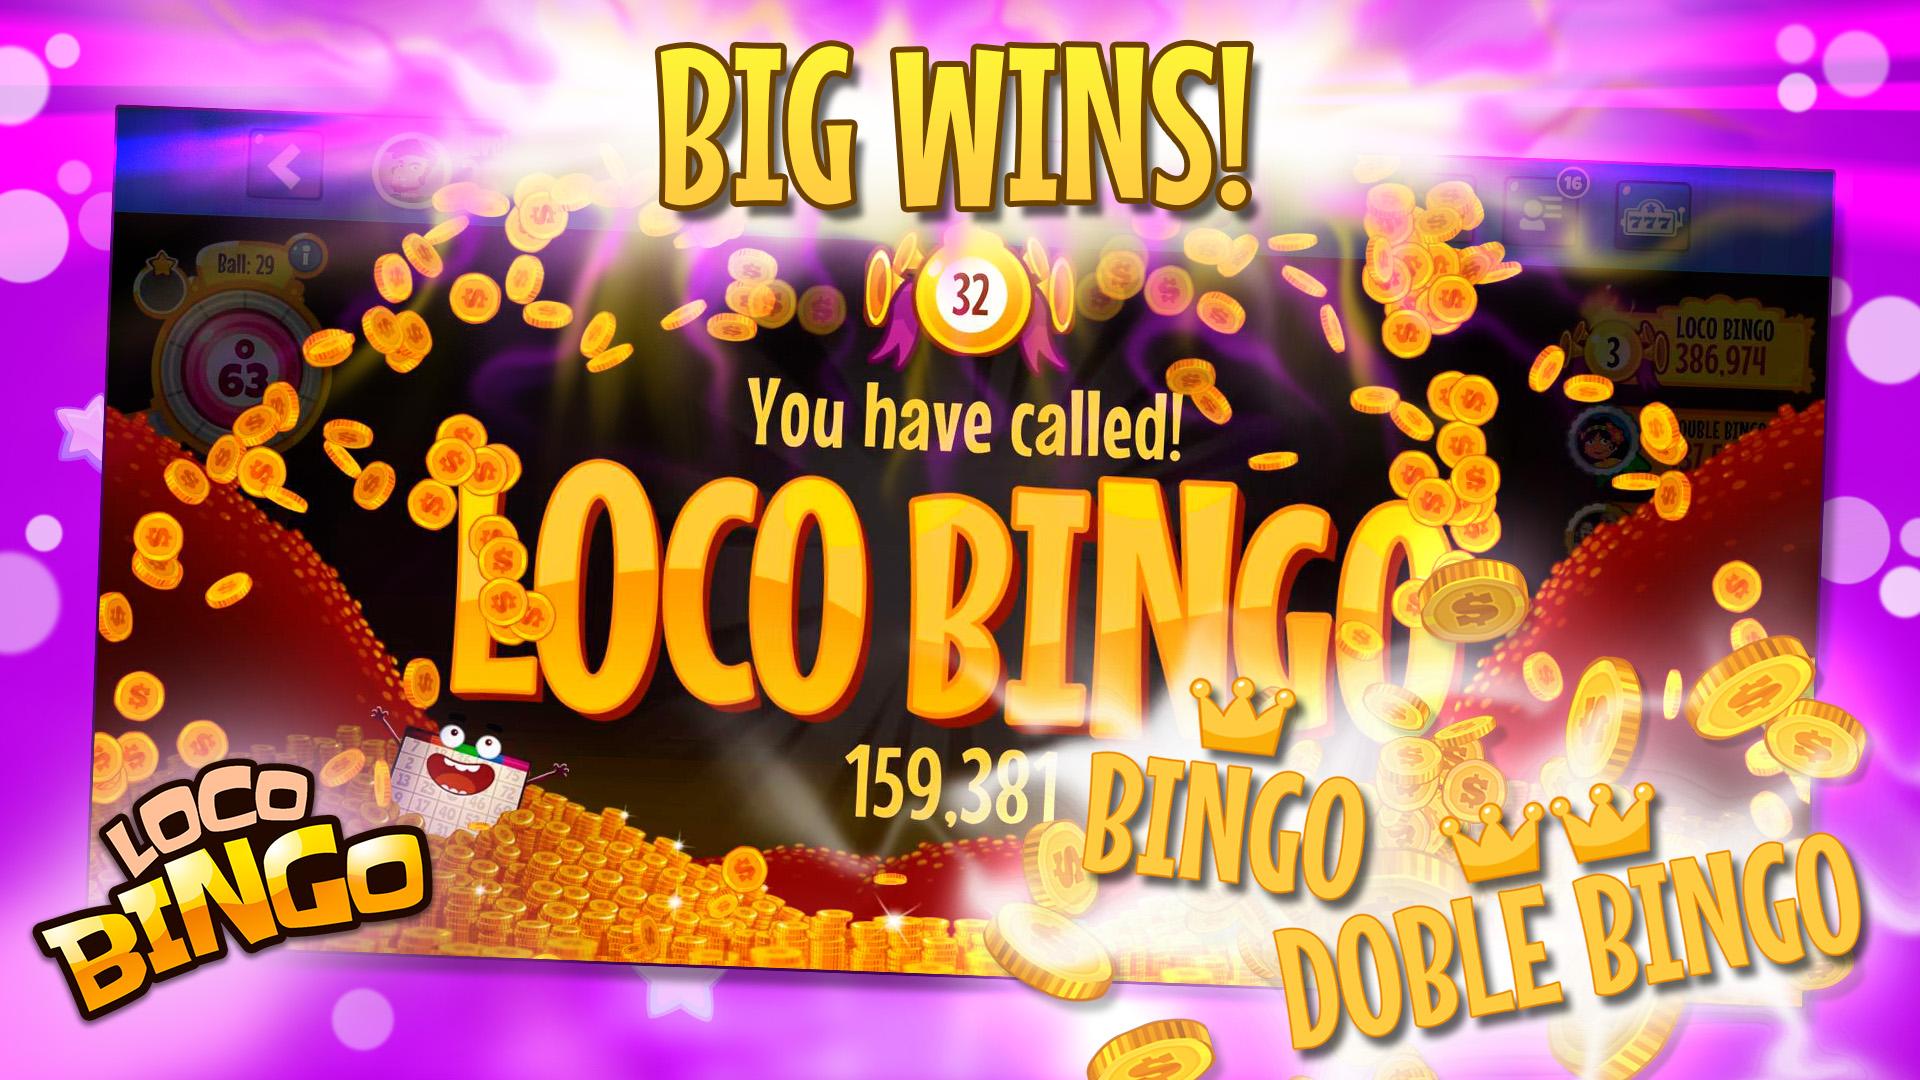 Loco bingo. Casino games slots 2021.6.0 Screenshot 18